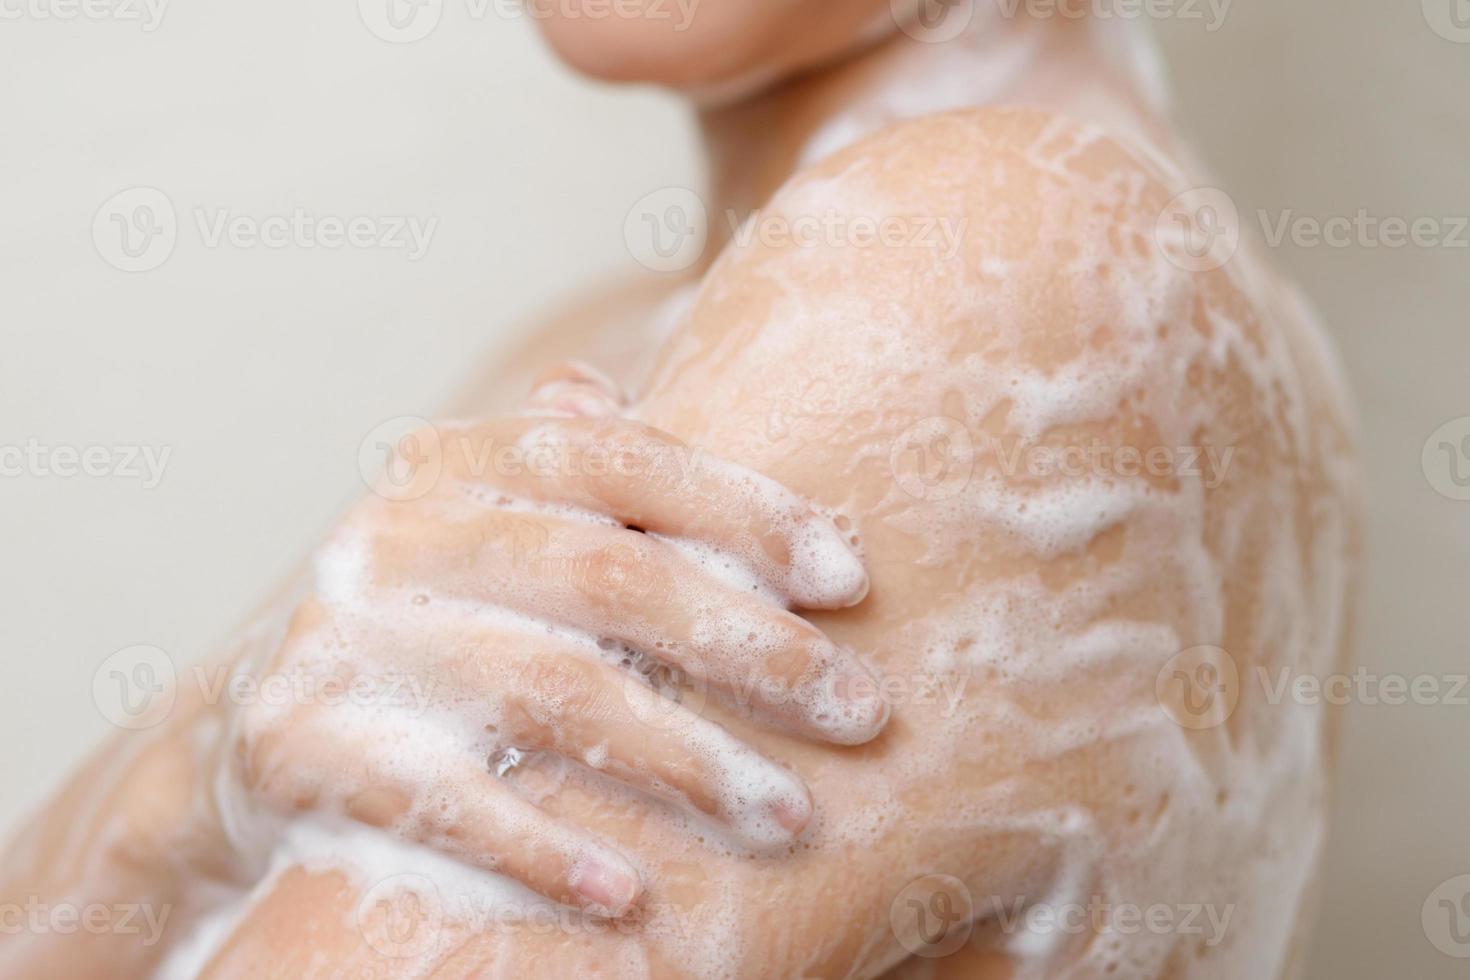 mulheres usar líquido Sabonete para chuveiro para Socorro eliminar bactérias. foto